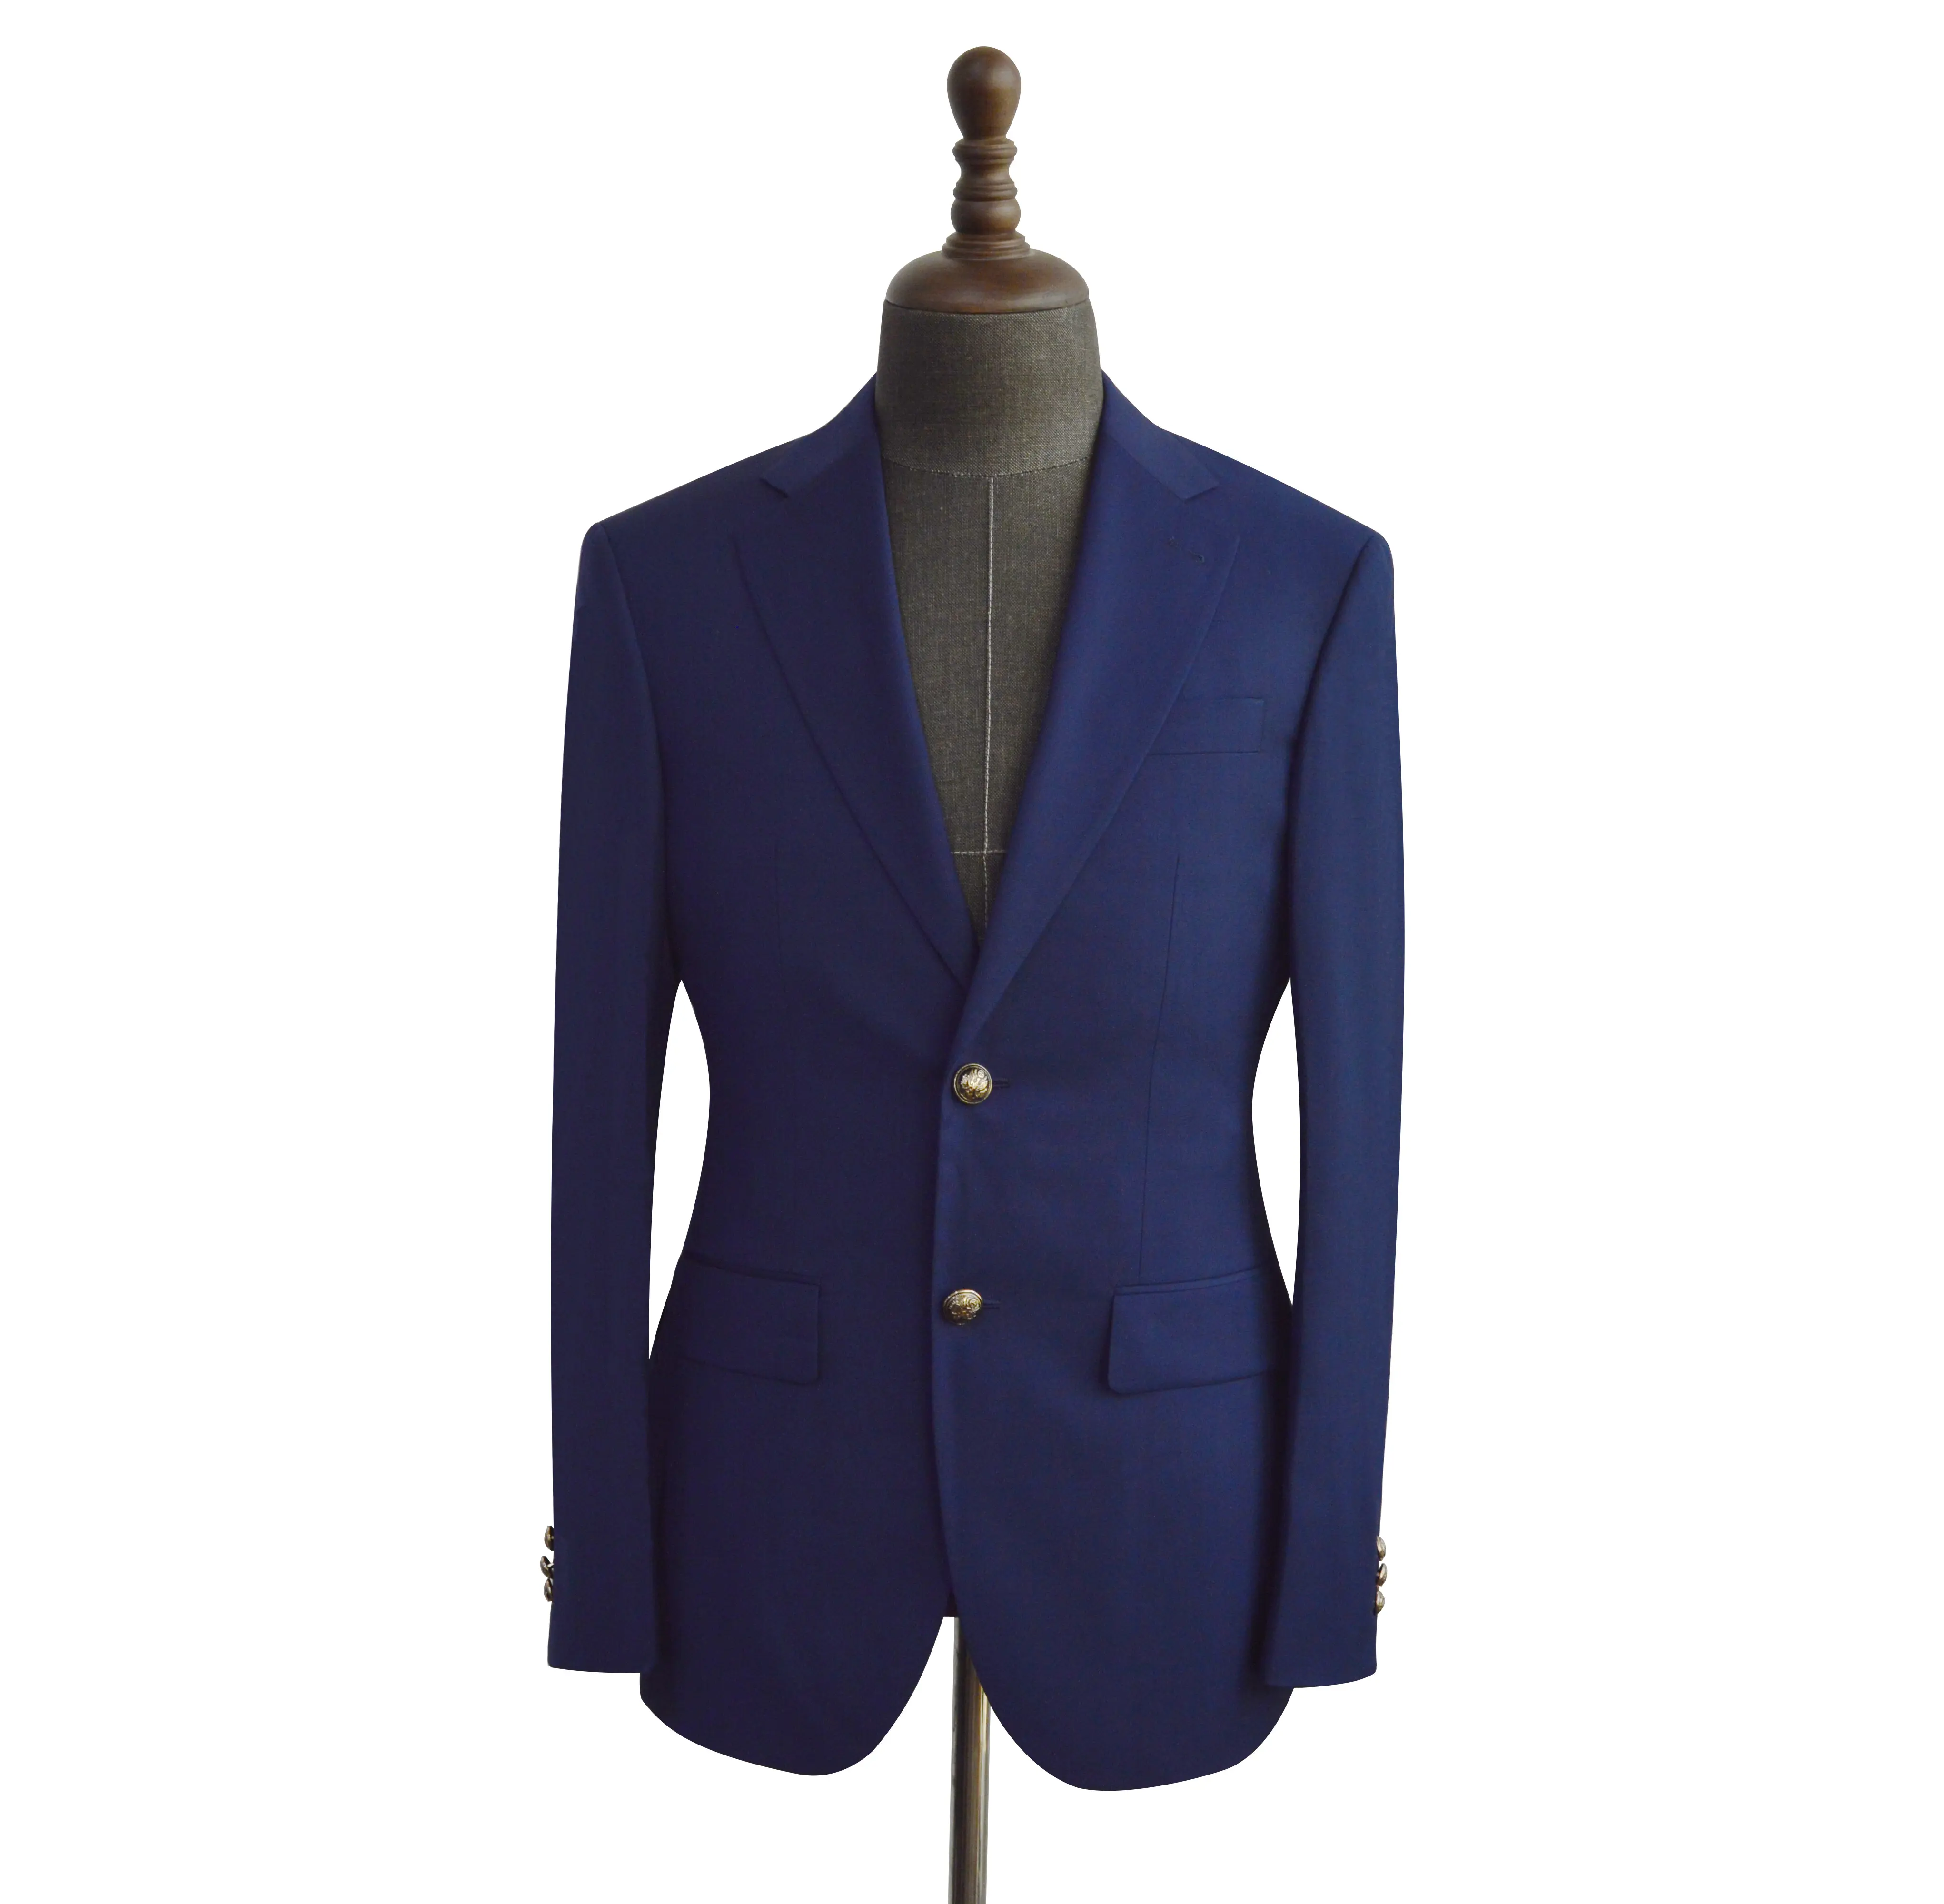 Suit Manufacturer Latest Design Coat Pant Blue Men Suit Wool New Style Wedding Dress Suits For Men